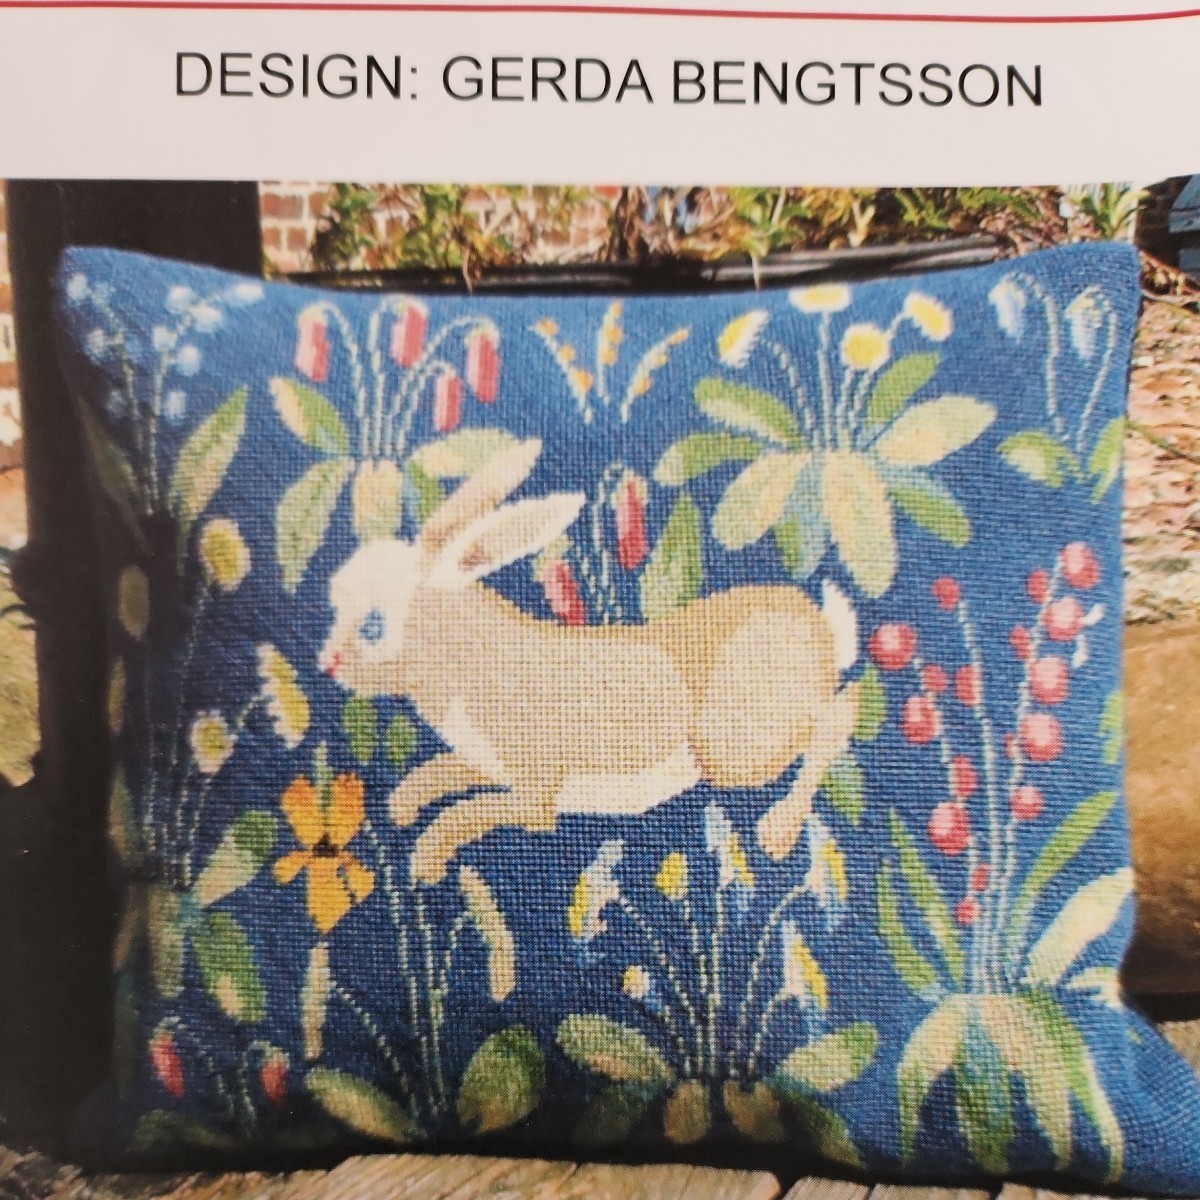 Gerda Bengtsson※　ウール刺繍キット　※デンマーク　フレメ※32×37cm※ゲルダ ベングトソン※ウサギと植物※